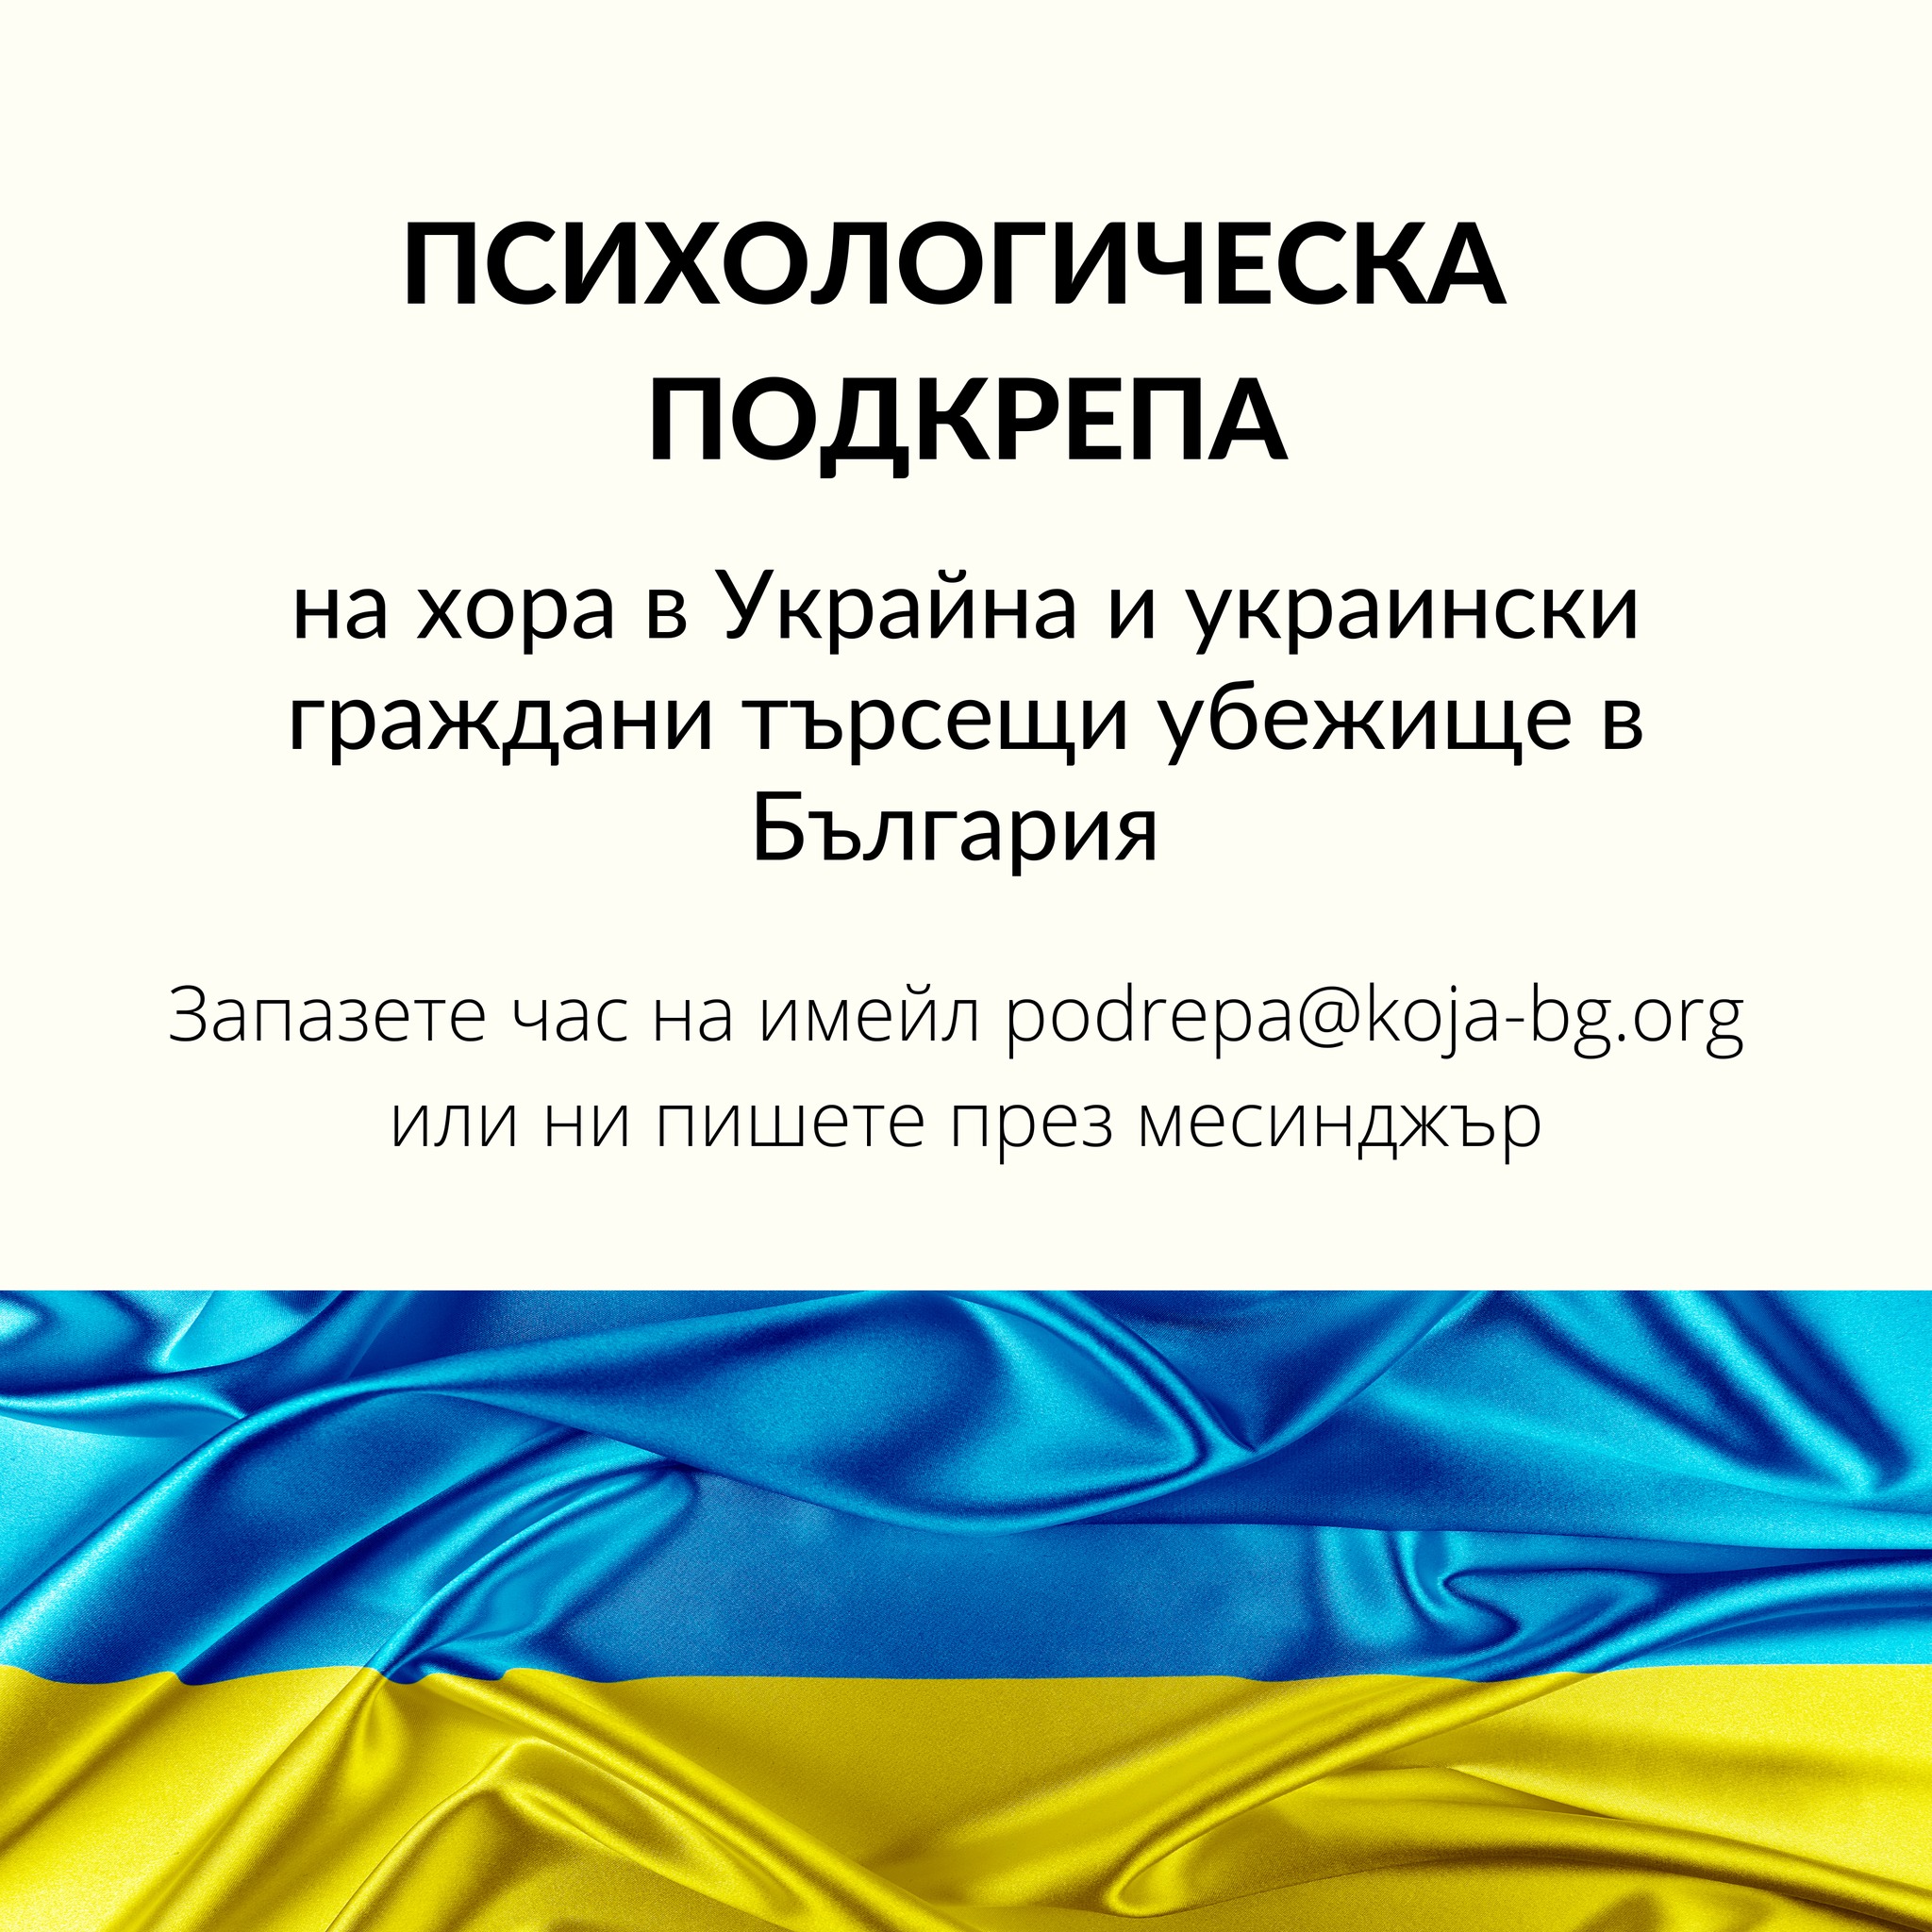 Фондация „Кожа-платформа за психично здраве” започна безплатно психологическо консултиране онлайн на хора в Украйна